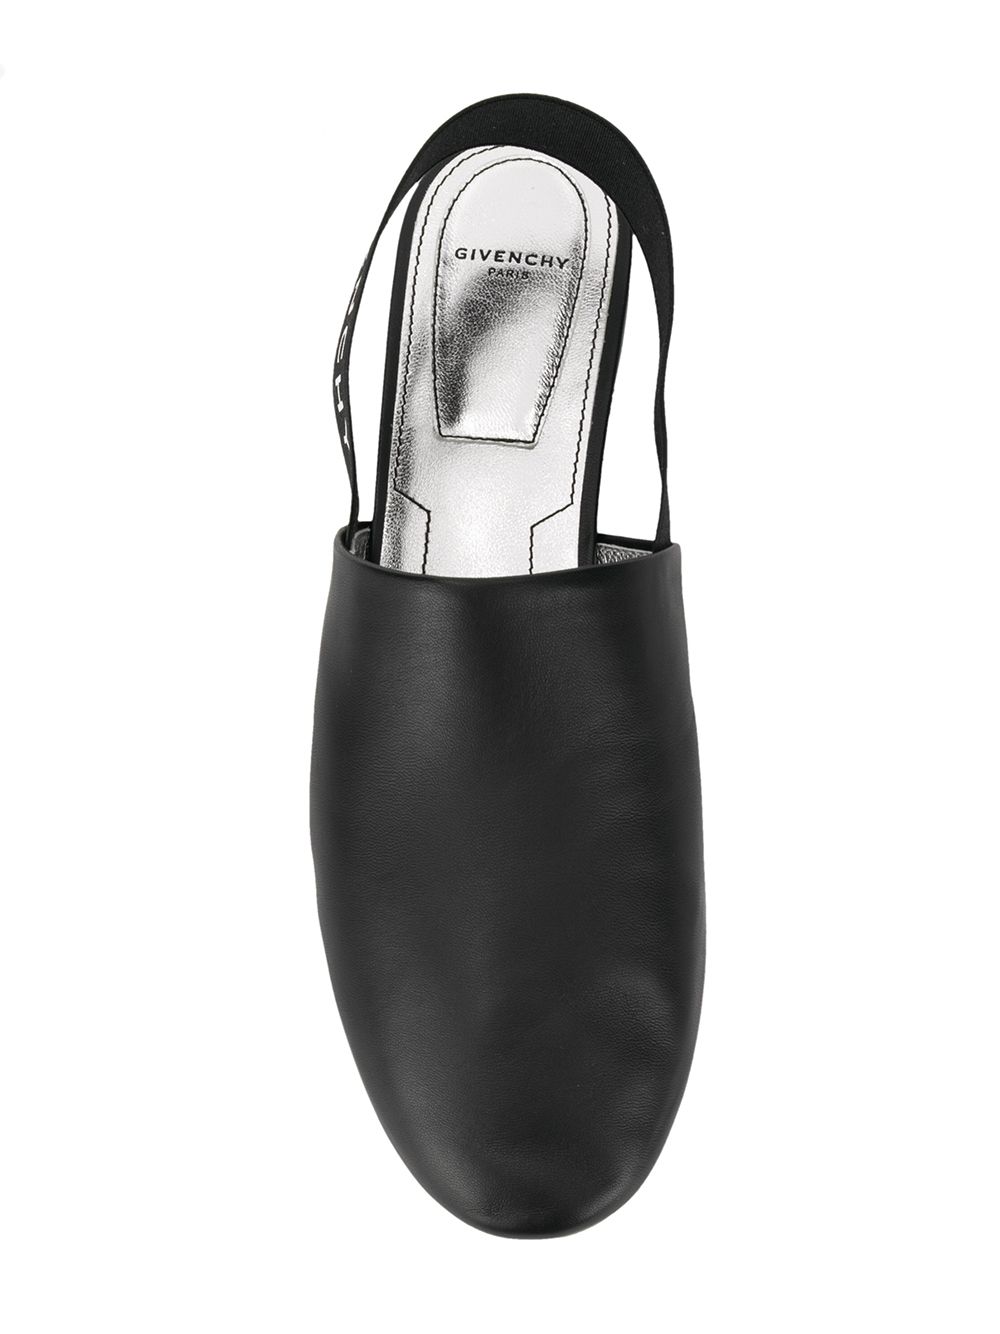 фото Givenchy туфли 'rivington' с открытой пяткой на плоской подошве